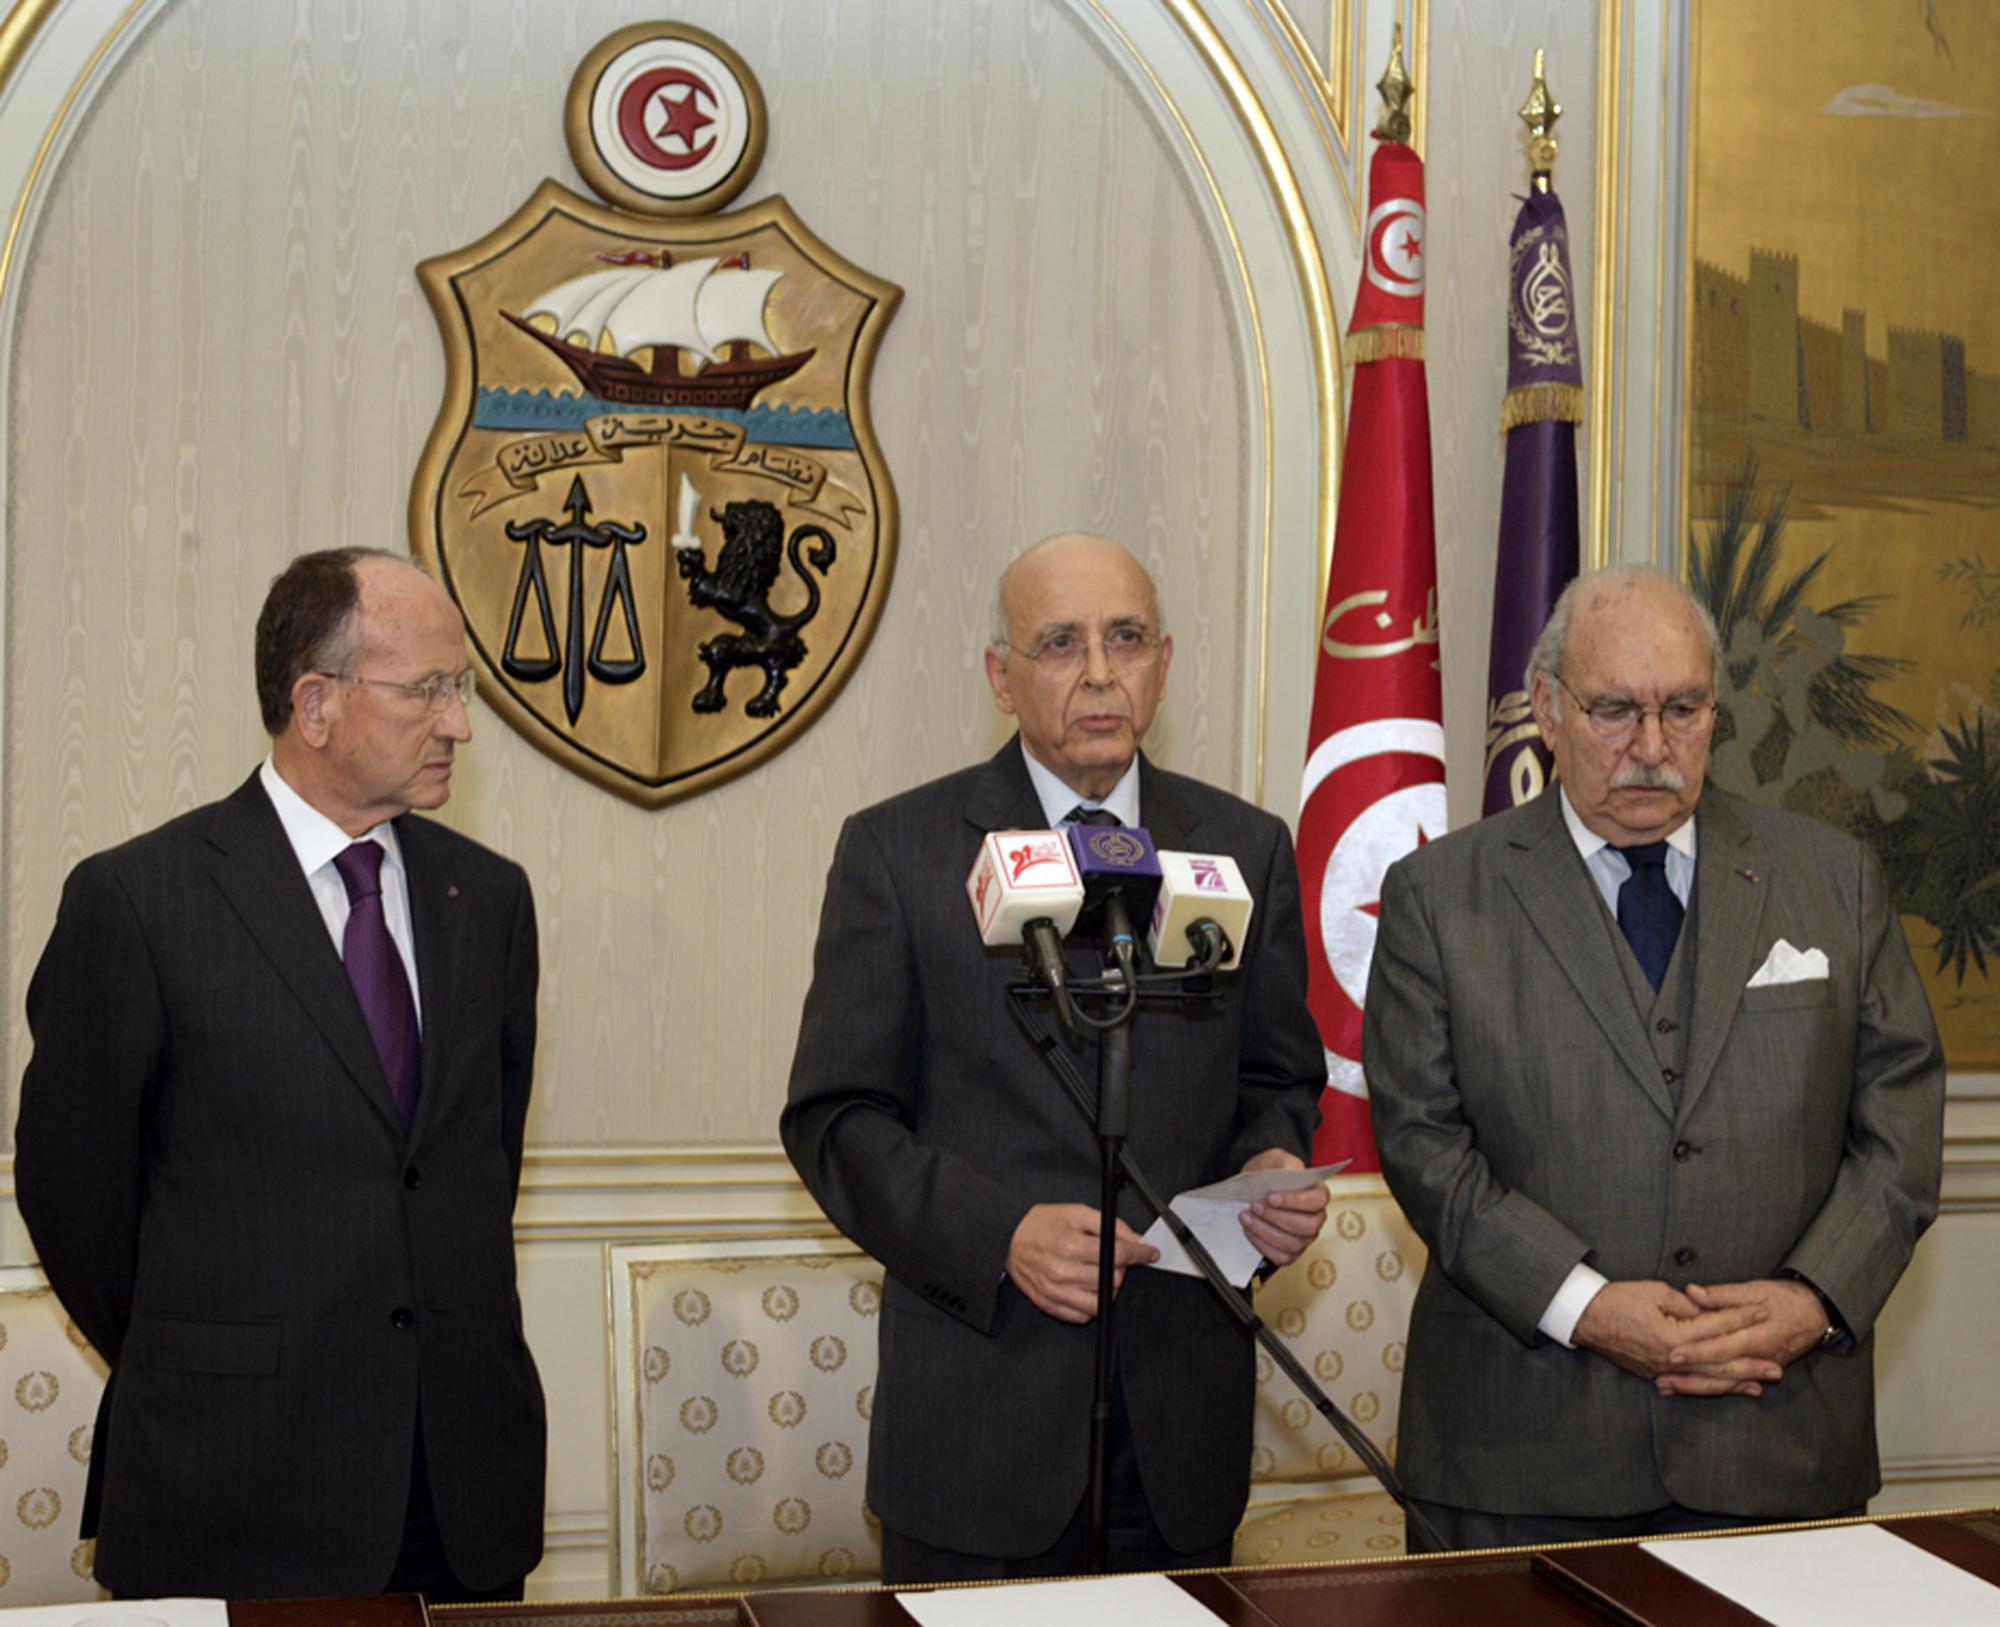 le Premier ministre Mohammed Ghannouchi (centre) avait annoncé vendredi assurer l'intérim à la présidence. Finalement, Foued Mbazaa (droite) a pris les rênes. [AFP - HO]